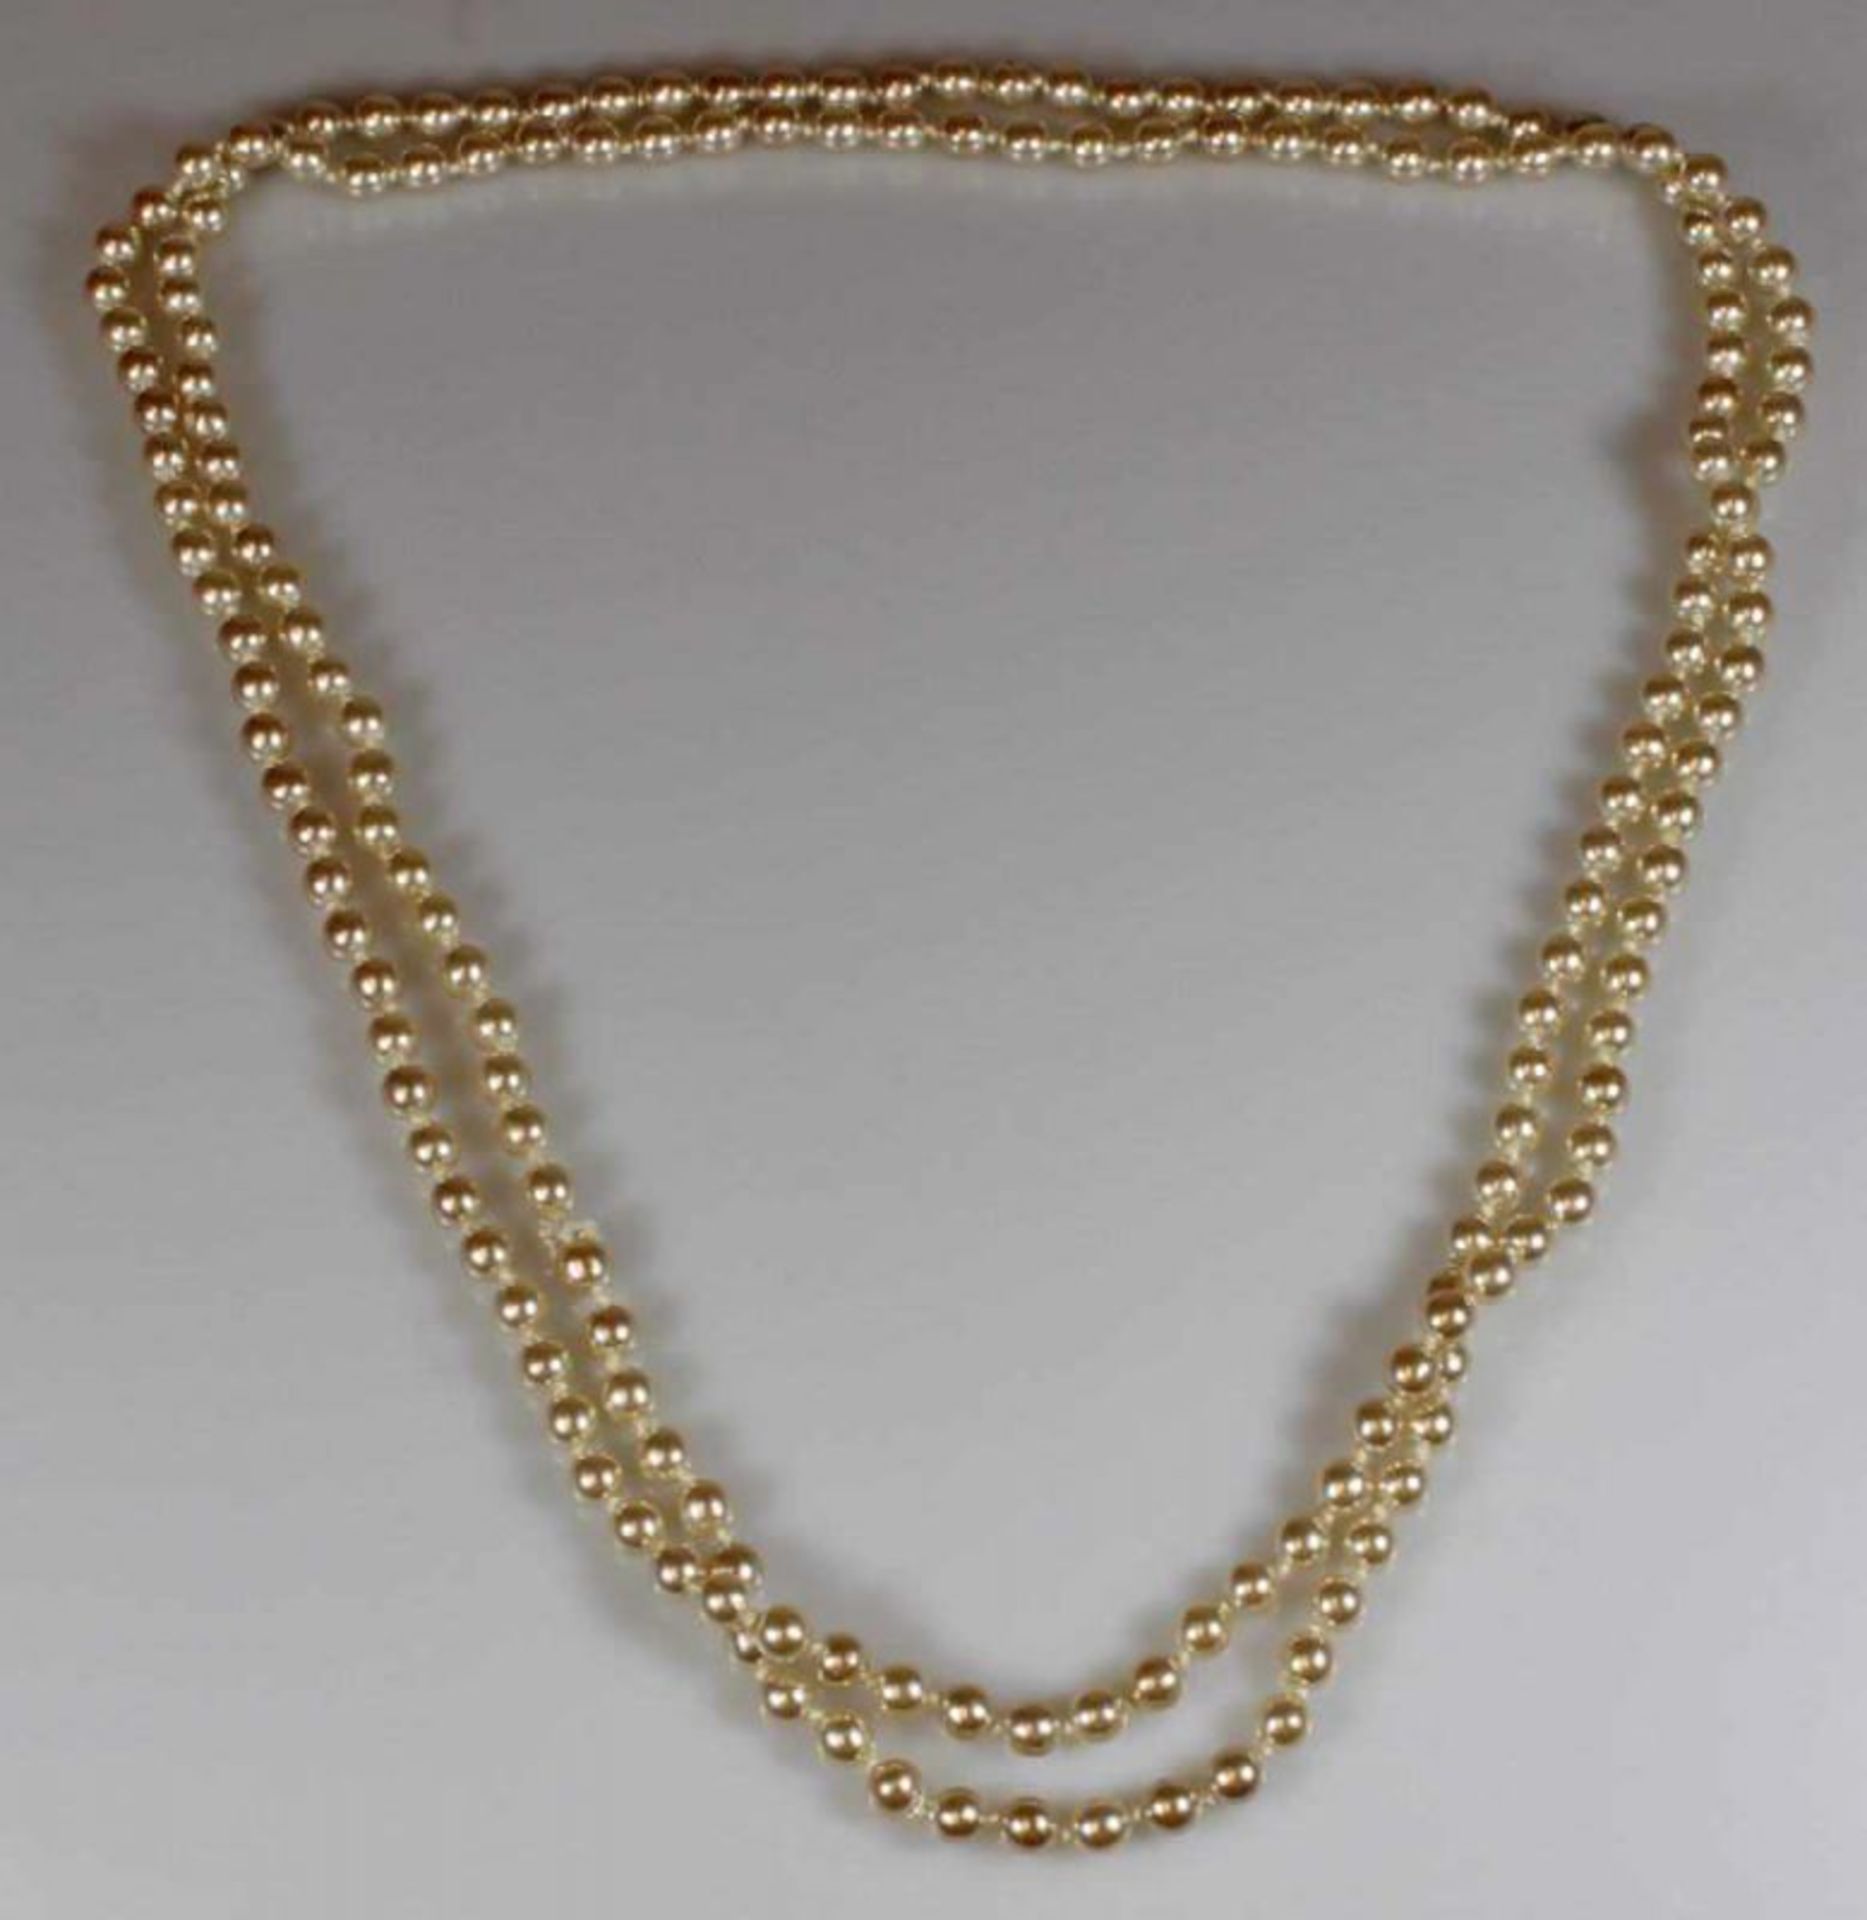 Perlenkette, endlos, ca. 190 Zuchtperlen ø ca. 6 mm, ca. 136 cm lang 25.00 % buyer's premium on